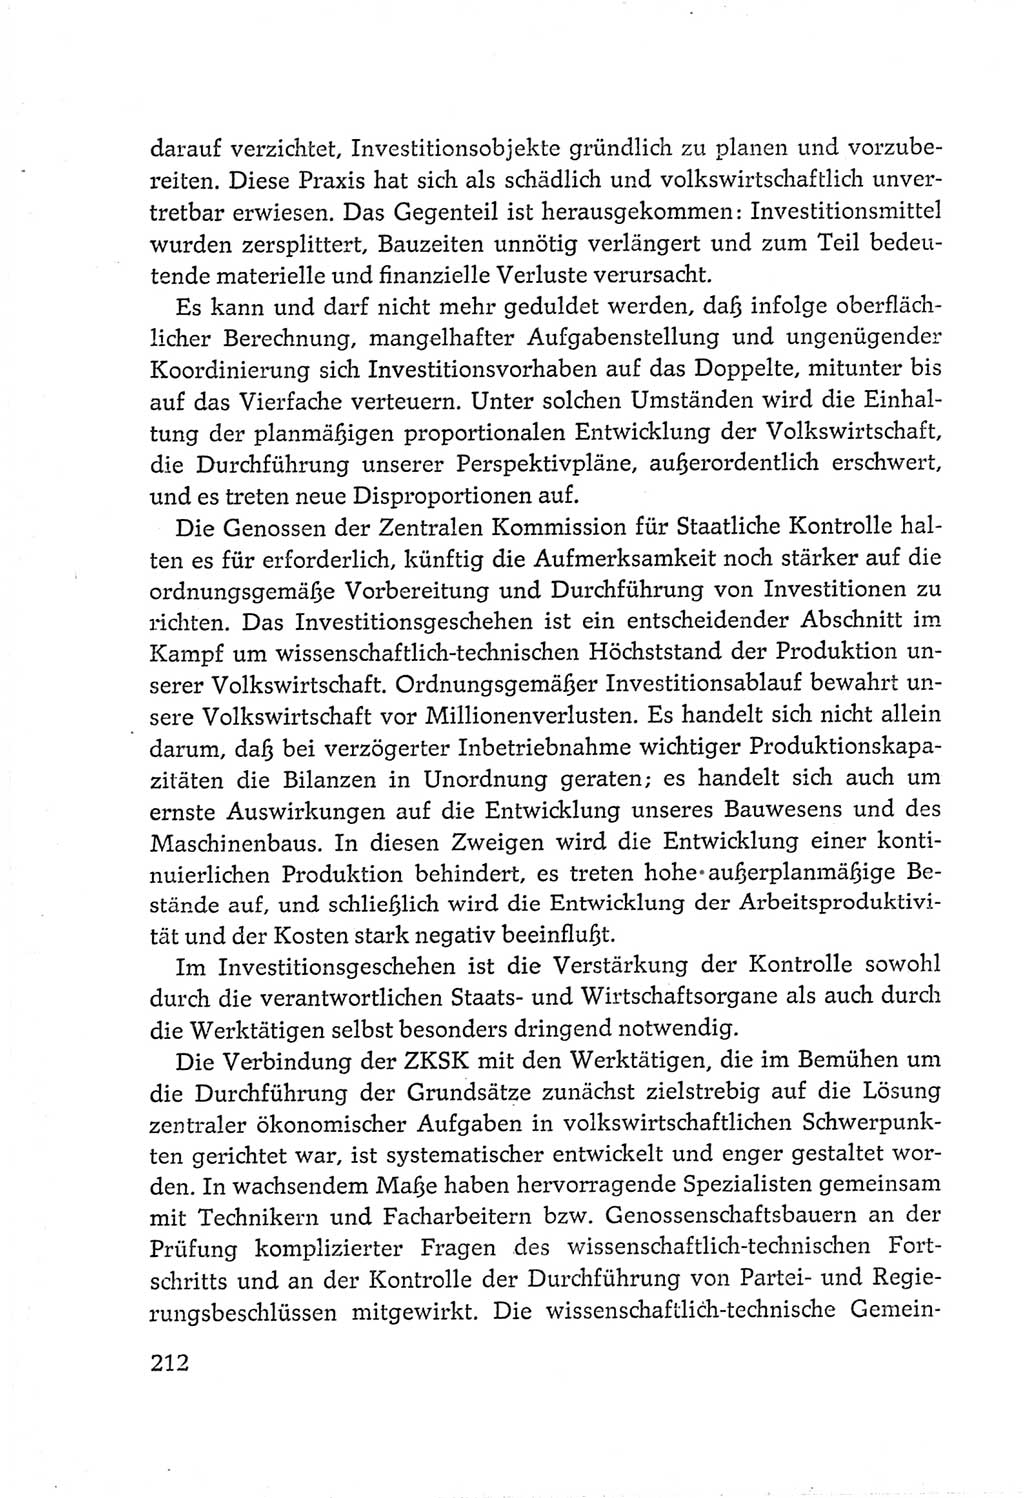 Protokoll der Verhandlungen des Ⅵ. Parteitages der Sozialistischen Einheitspartei Deutschlands (SED) [Deutsche Demokratische Republik (DDR)] 1963, Band Ⅲ, Seite 212 (Prot. Verh. Ⅵ. PT SED DDR 1963, Bd. Ⅲ, S. 212)